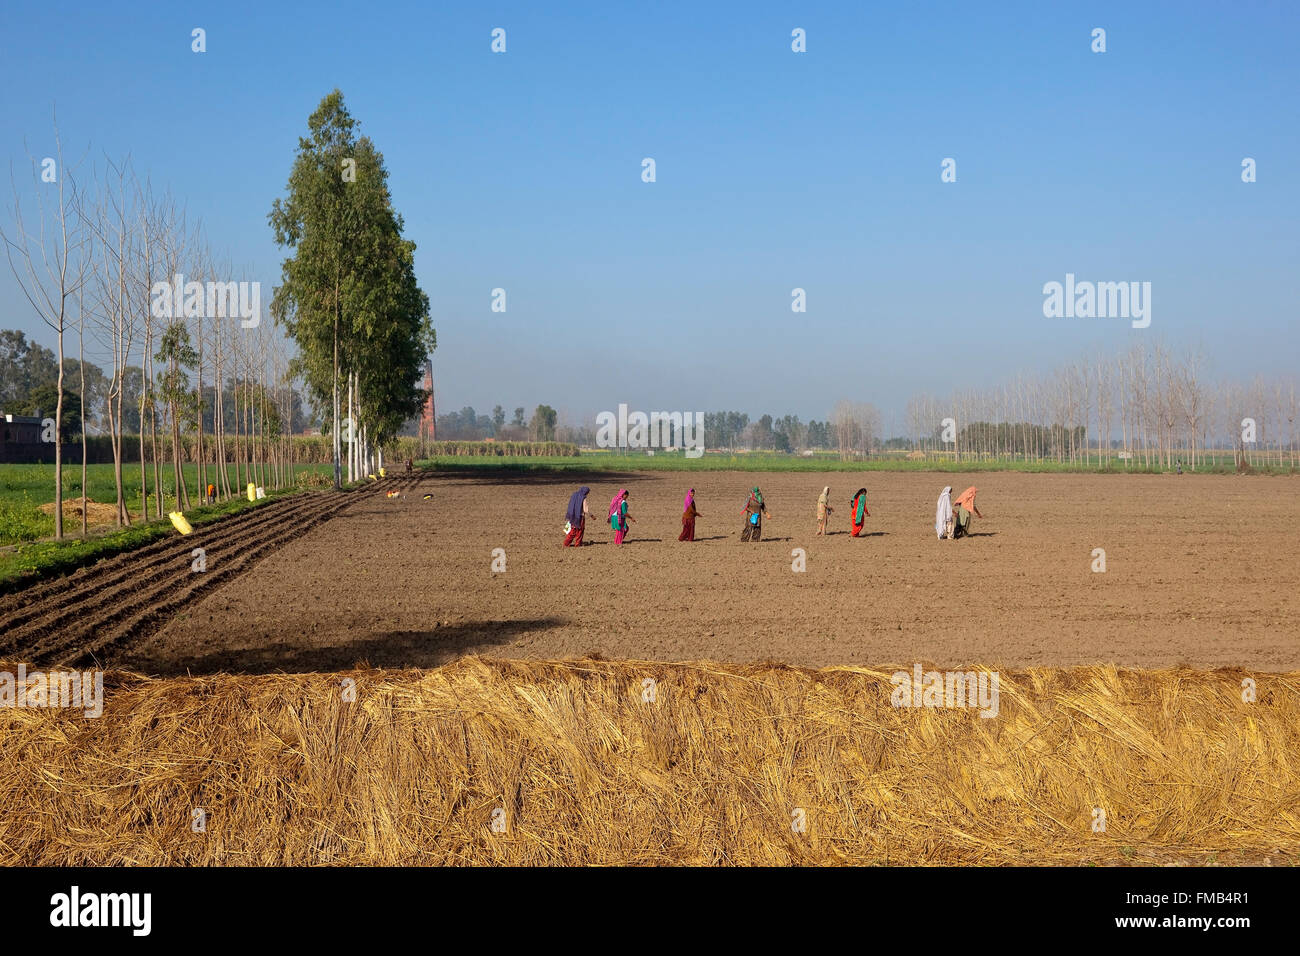 Una tradicional Punjabi escenario agrícola con mujeres sembrando semillas en los surcos del campo en primavera. Foto de stock